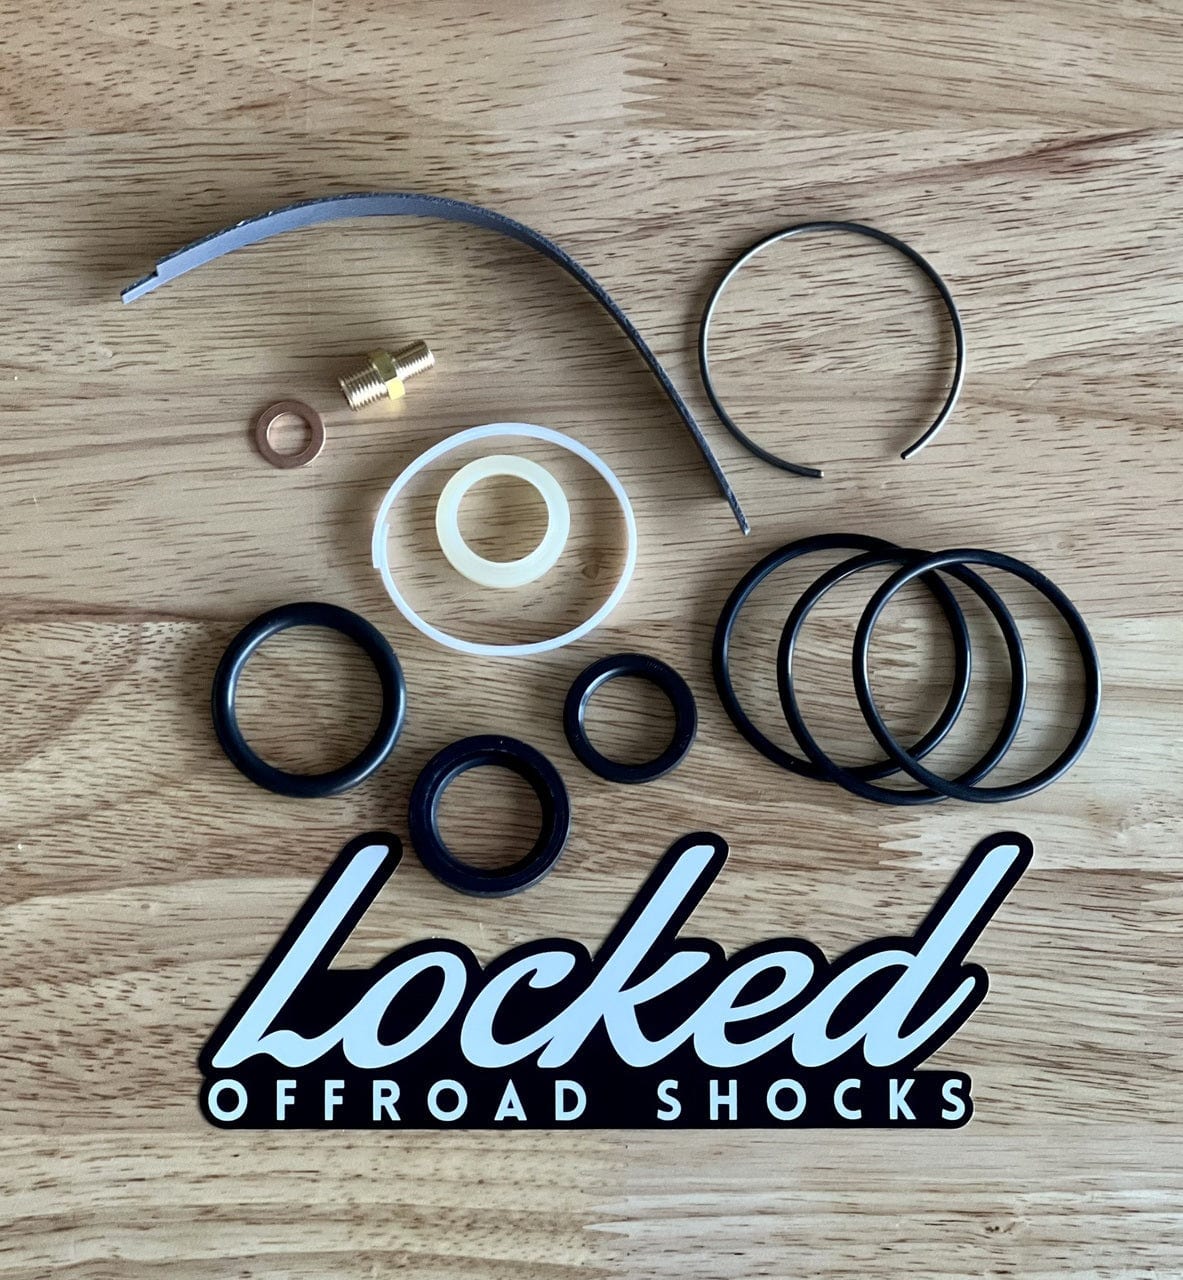 Locked Offroad Shocks Shocks 2.5" Shock Rebuild Kit